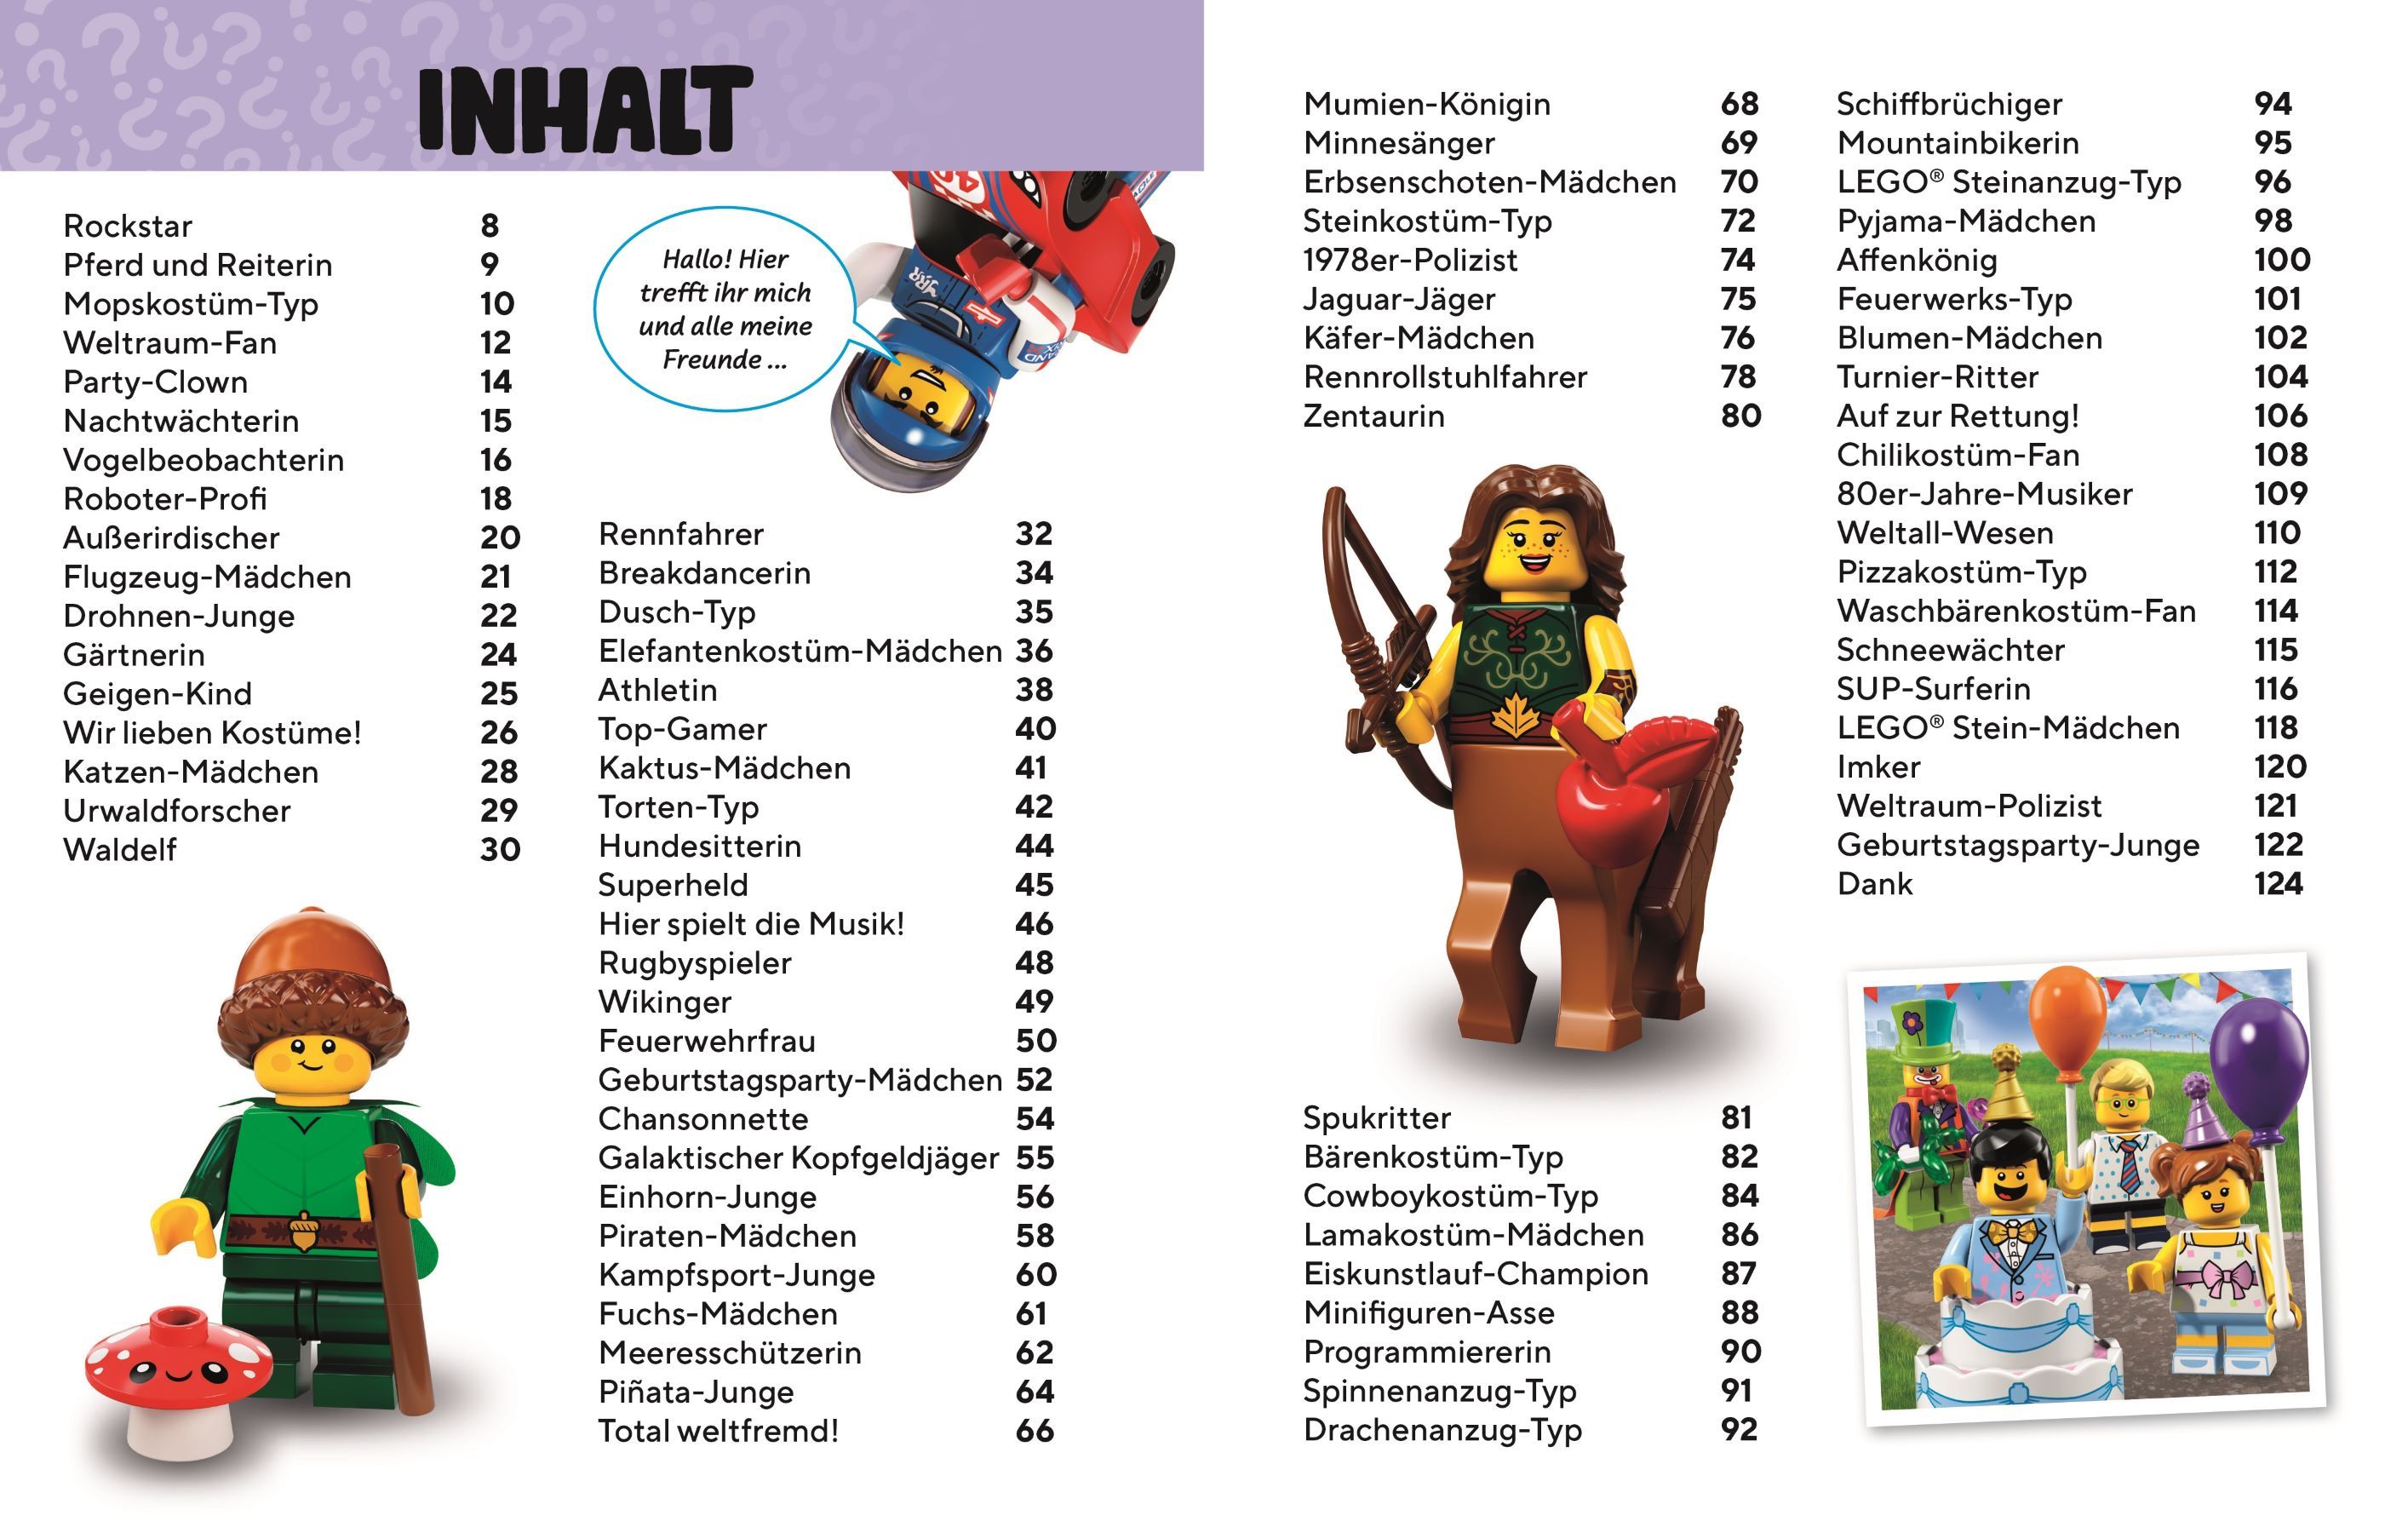 LEGO Buch 5007970 LEGO® Die Welt der Minifiguren LEGO_5007970_alt1.jpg